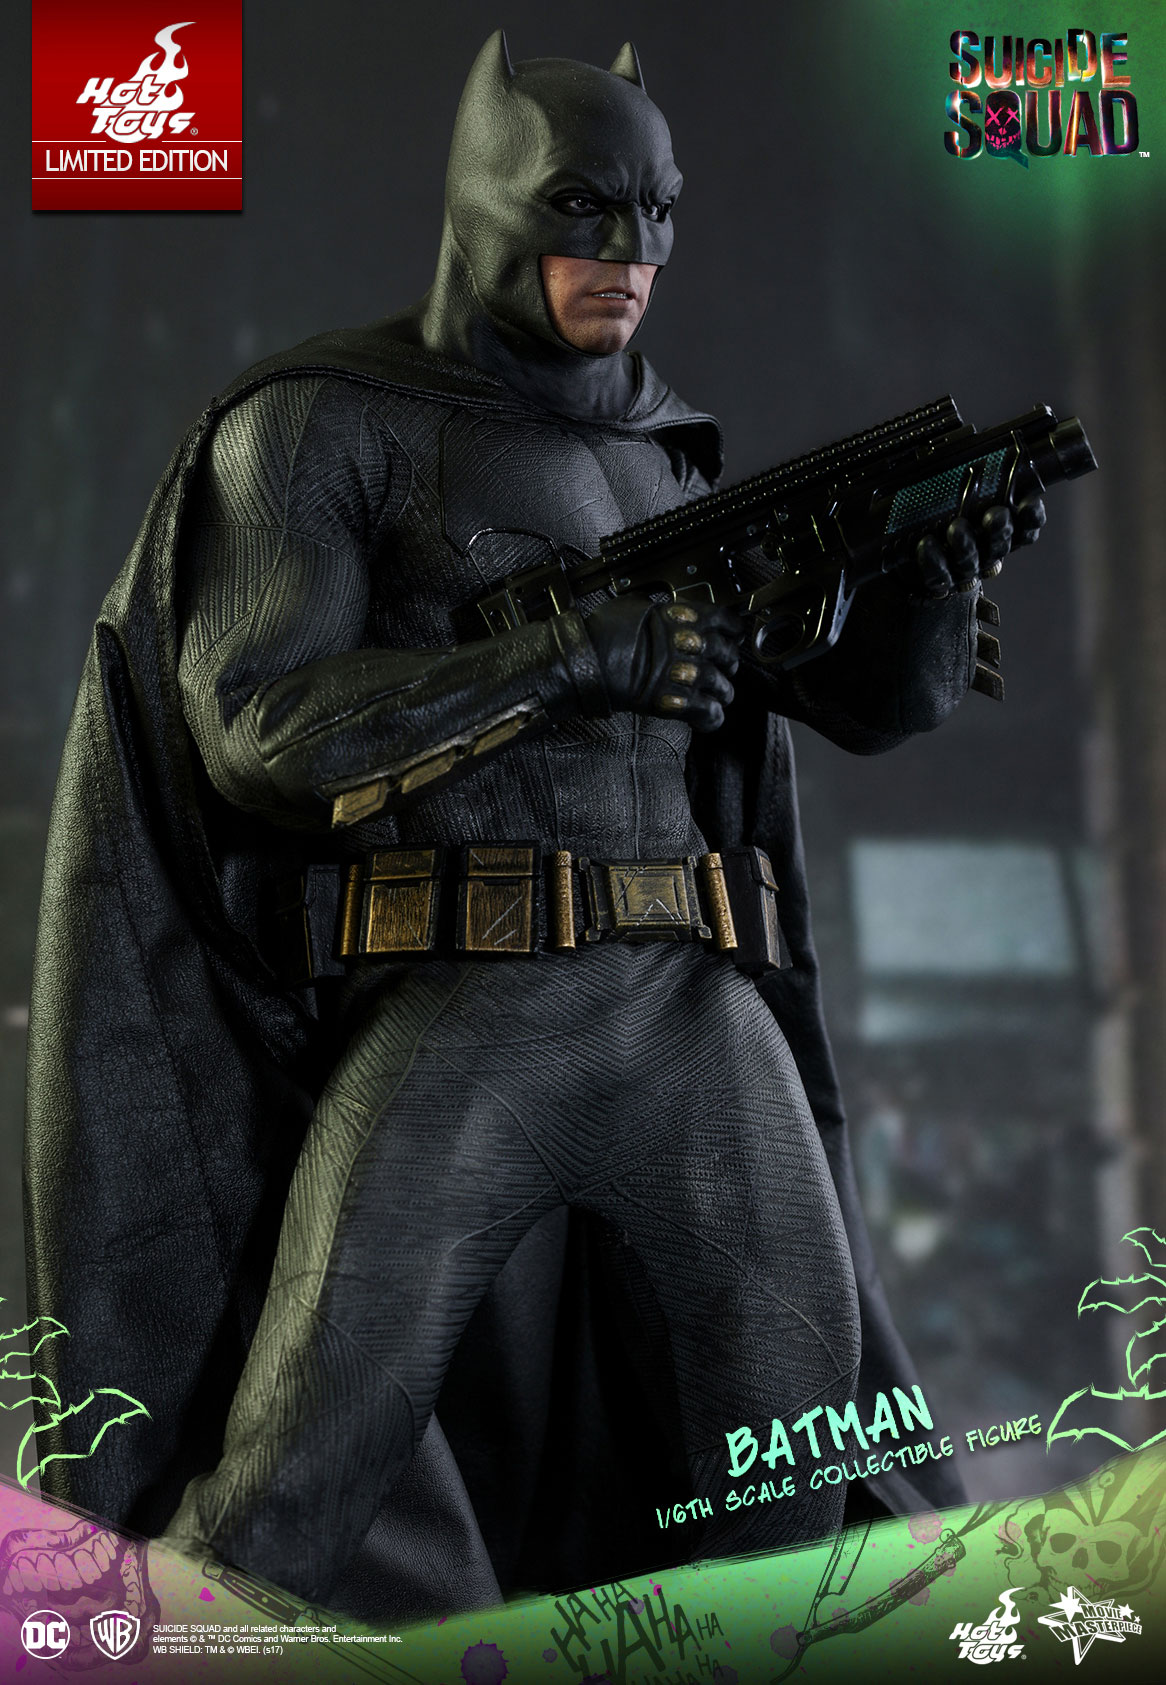 蝙蝠侠裆部大图片